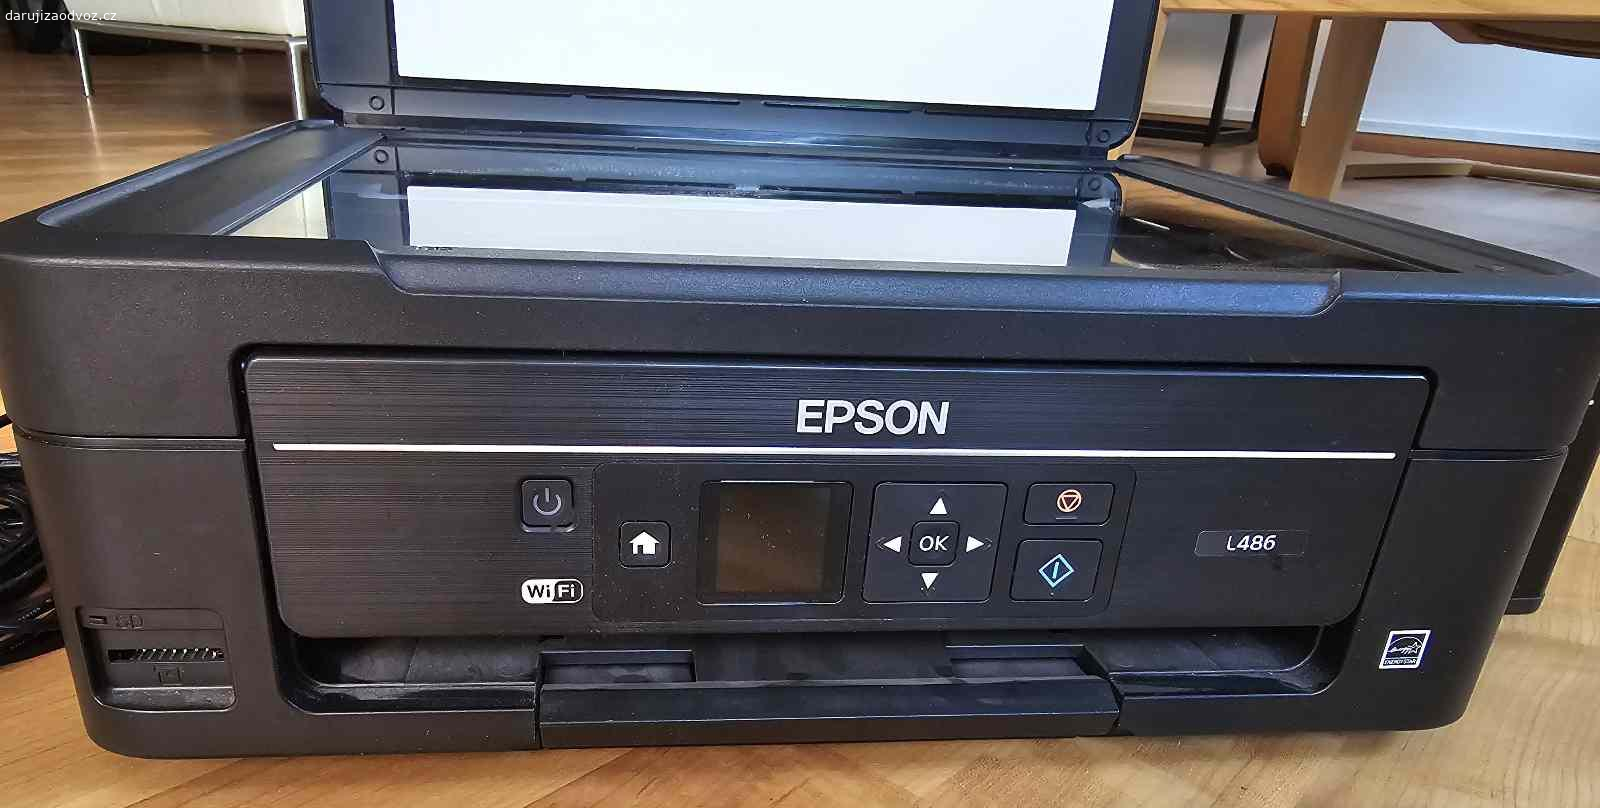 Daruji tiskárnu se skenerem EPSON L486. Daruji tiskárnu se skenerem Epson 486, jde o tiskárnu takzvaně tankovou, tedy s velkými zásobníky barvy. České menu na displeji. Tiskárnu bude třeba rozhodit, už dlouho jsem na ní netisknuul, skener je plně funkční. Software je dostupný v tehnciké podpoře Epsonu - https://www.epson.cz/cs_CZ/support/sc/epson-l486/s/s1499. Nejlepší by byl odvoz dnes nebo zítra večer.